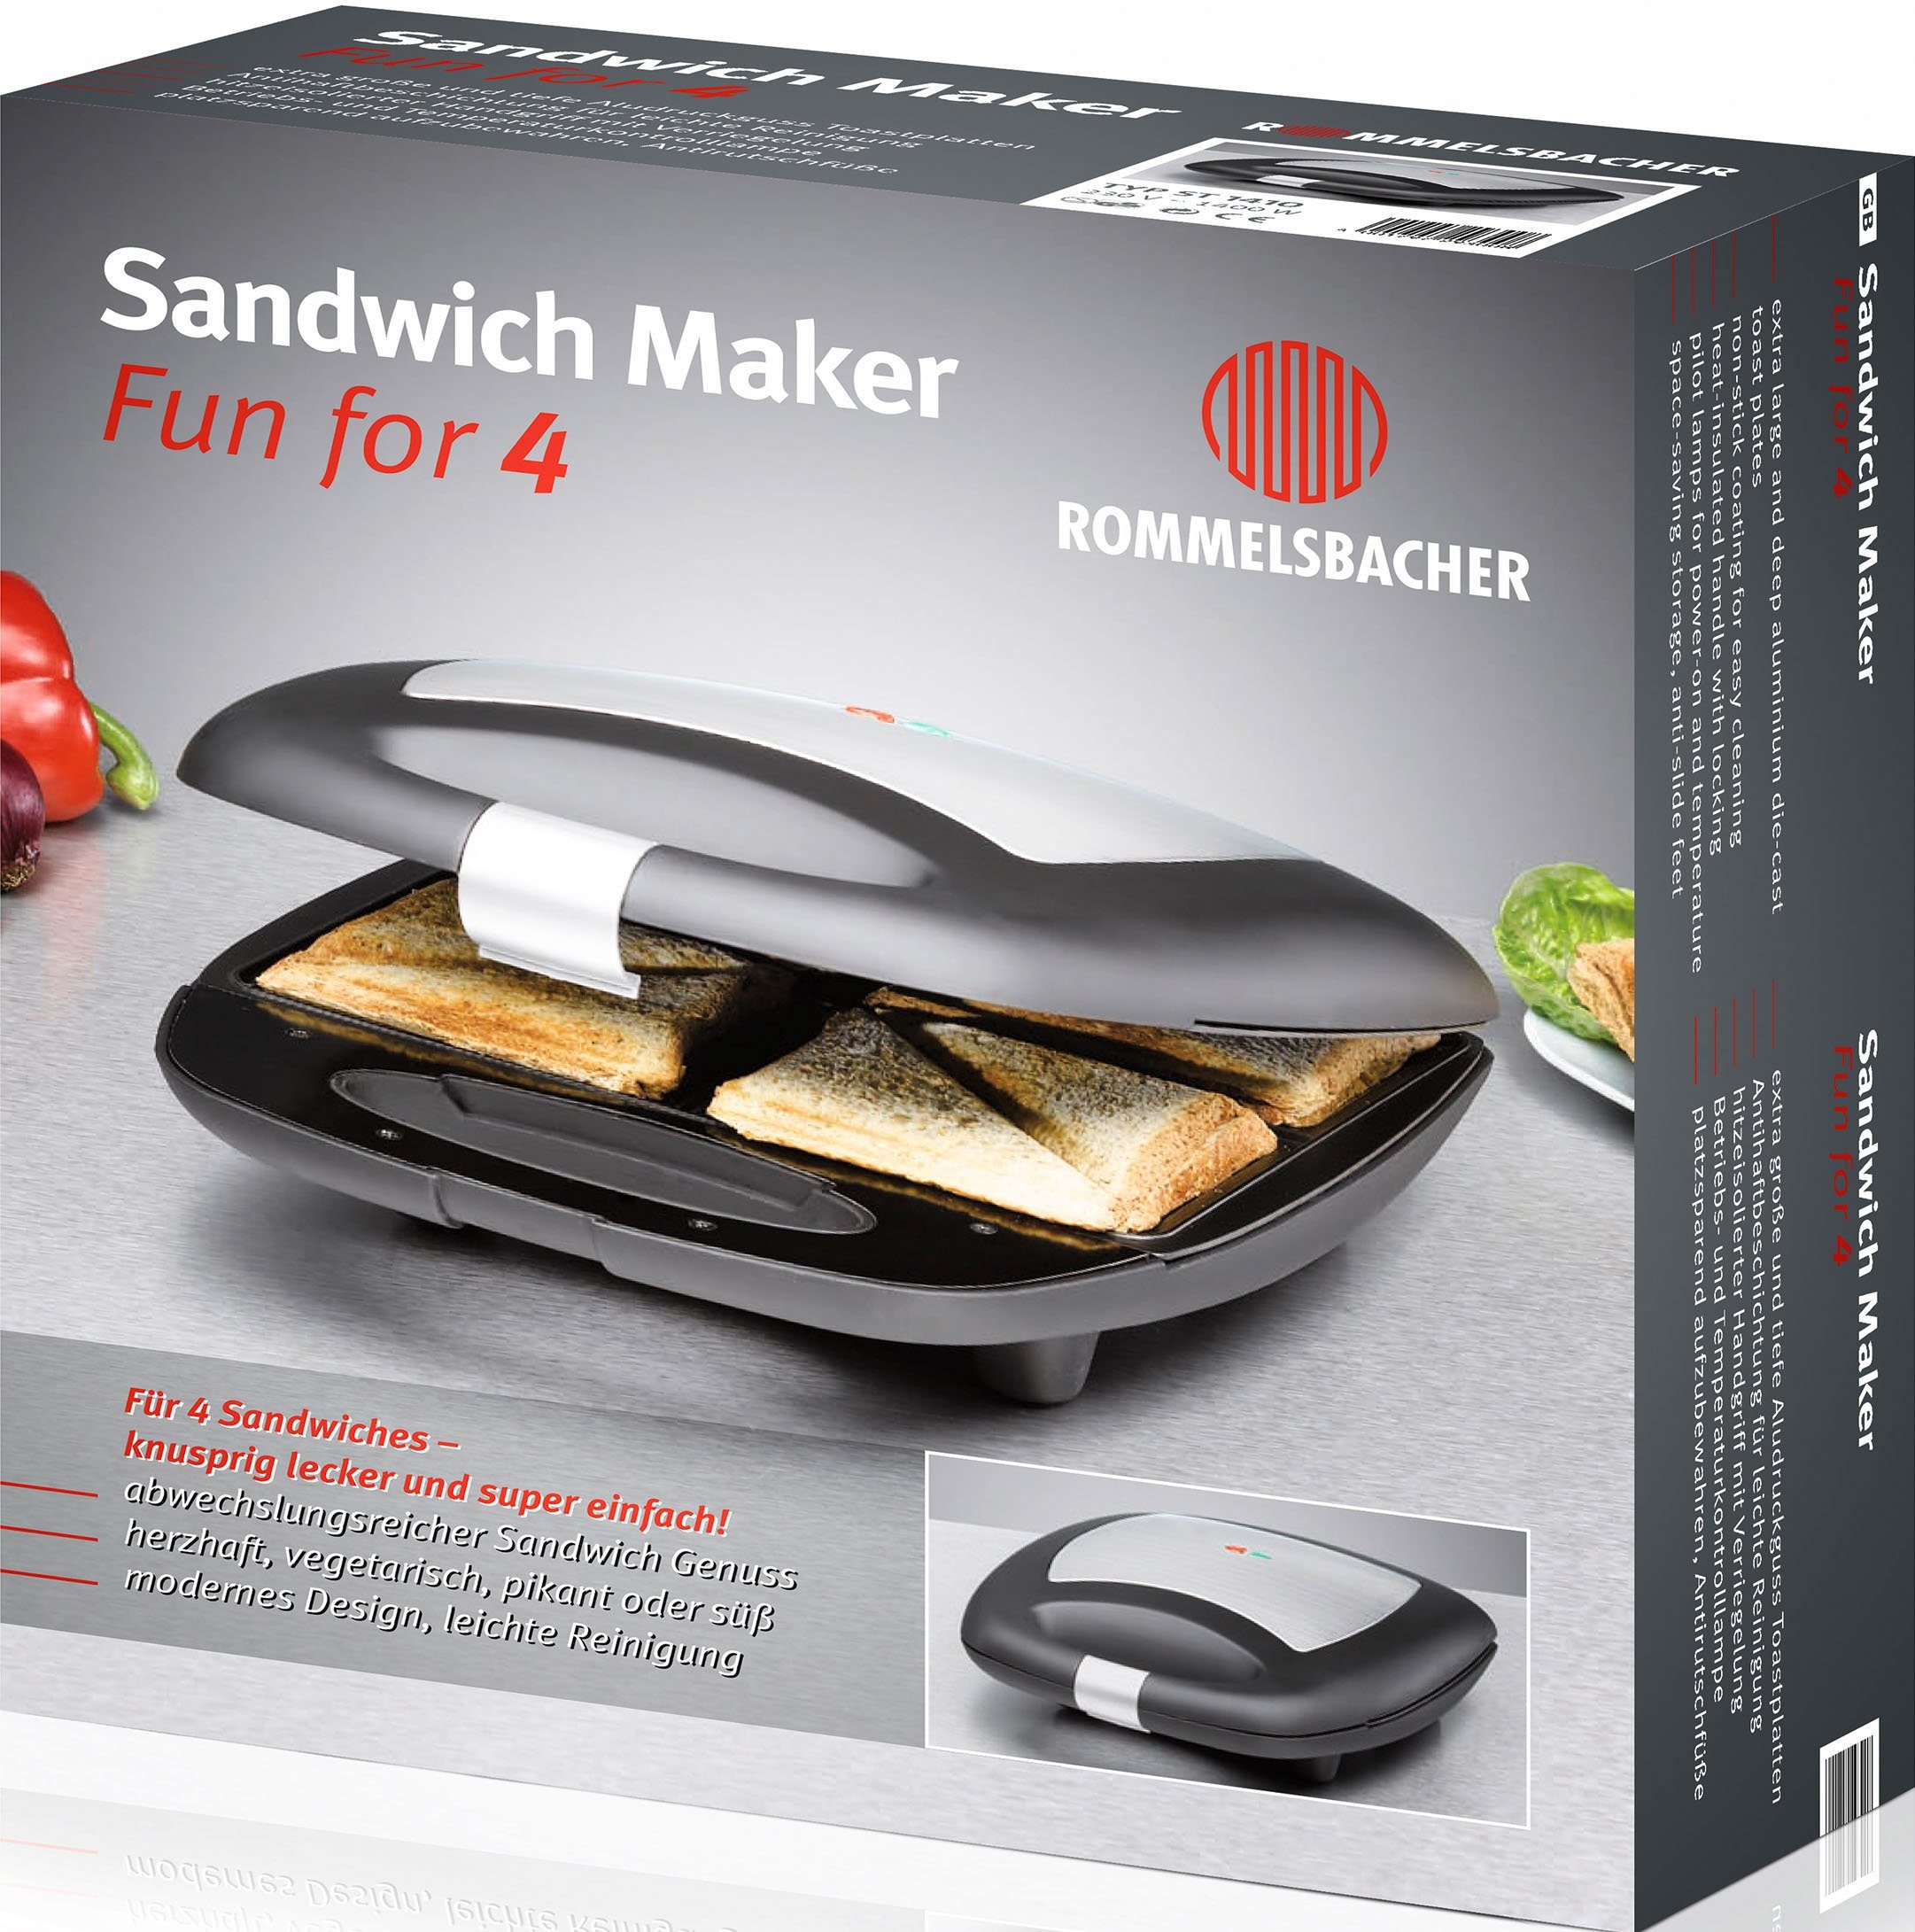 Rommelsbacher W for 4", ST 1410 "Fun 1400 Sandwichmaker